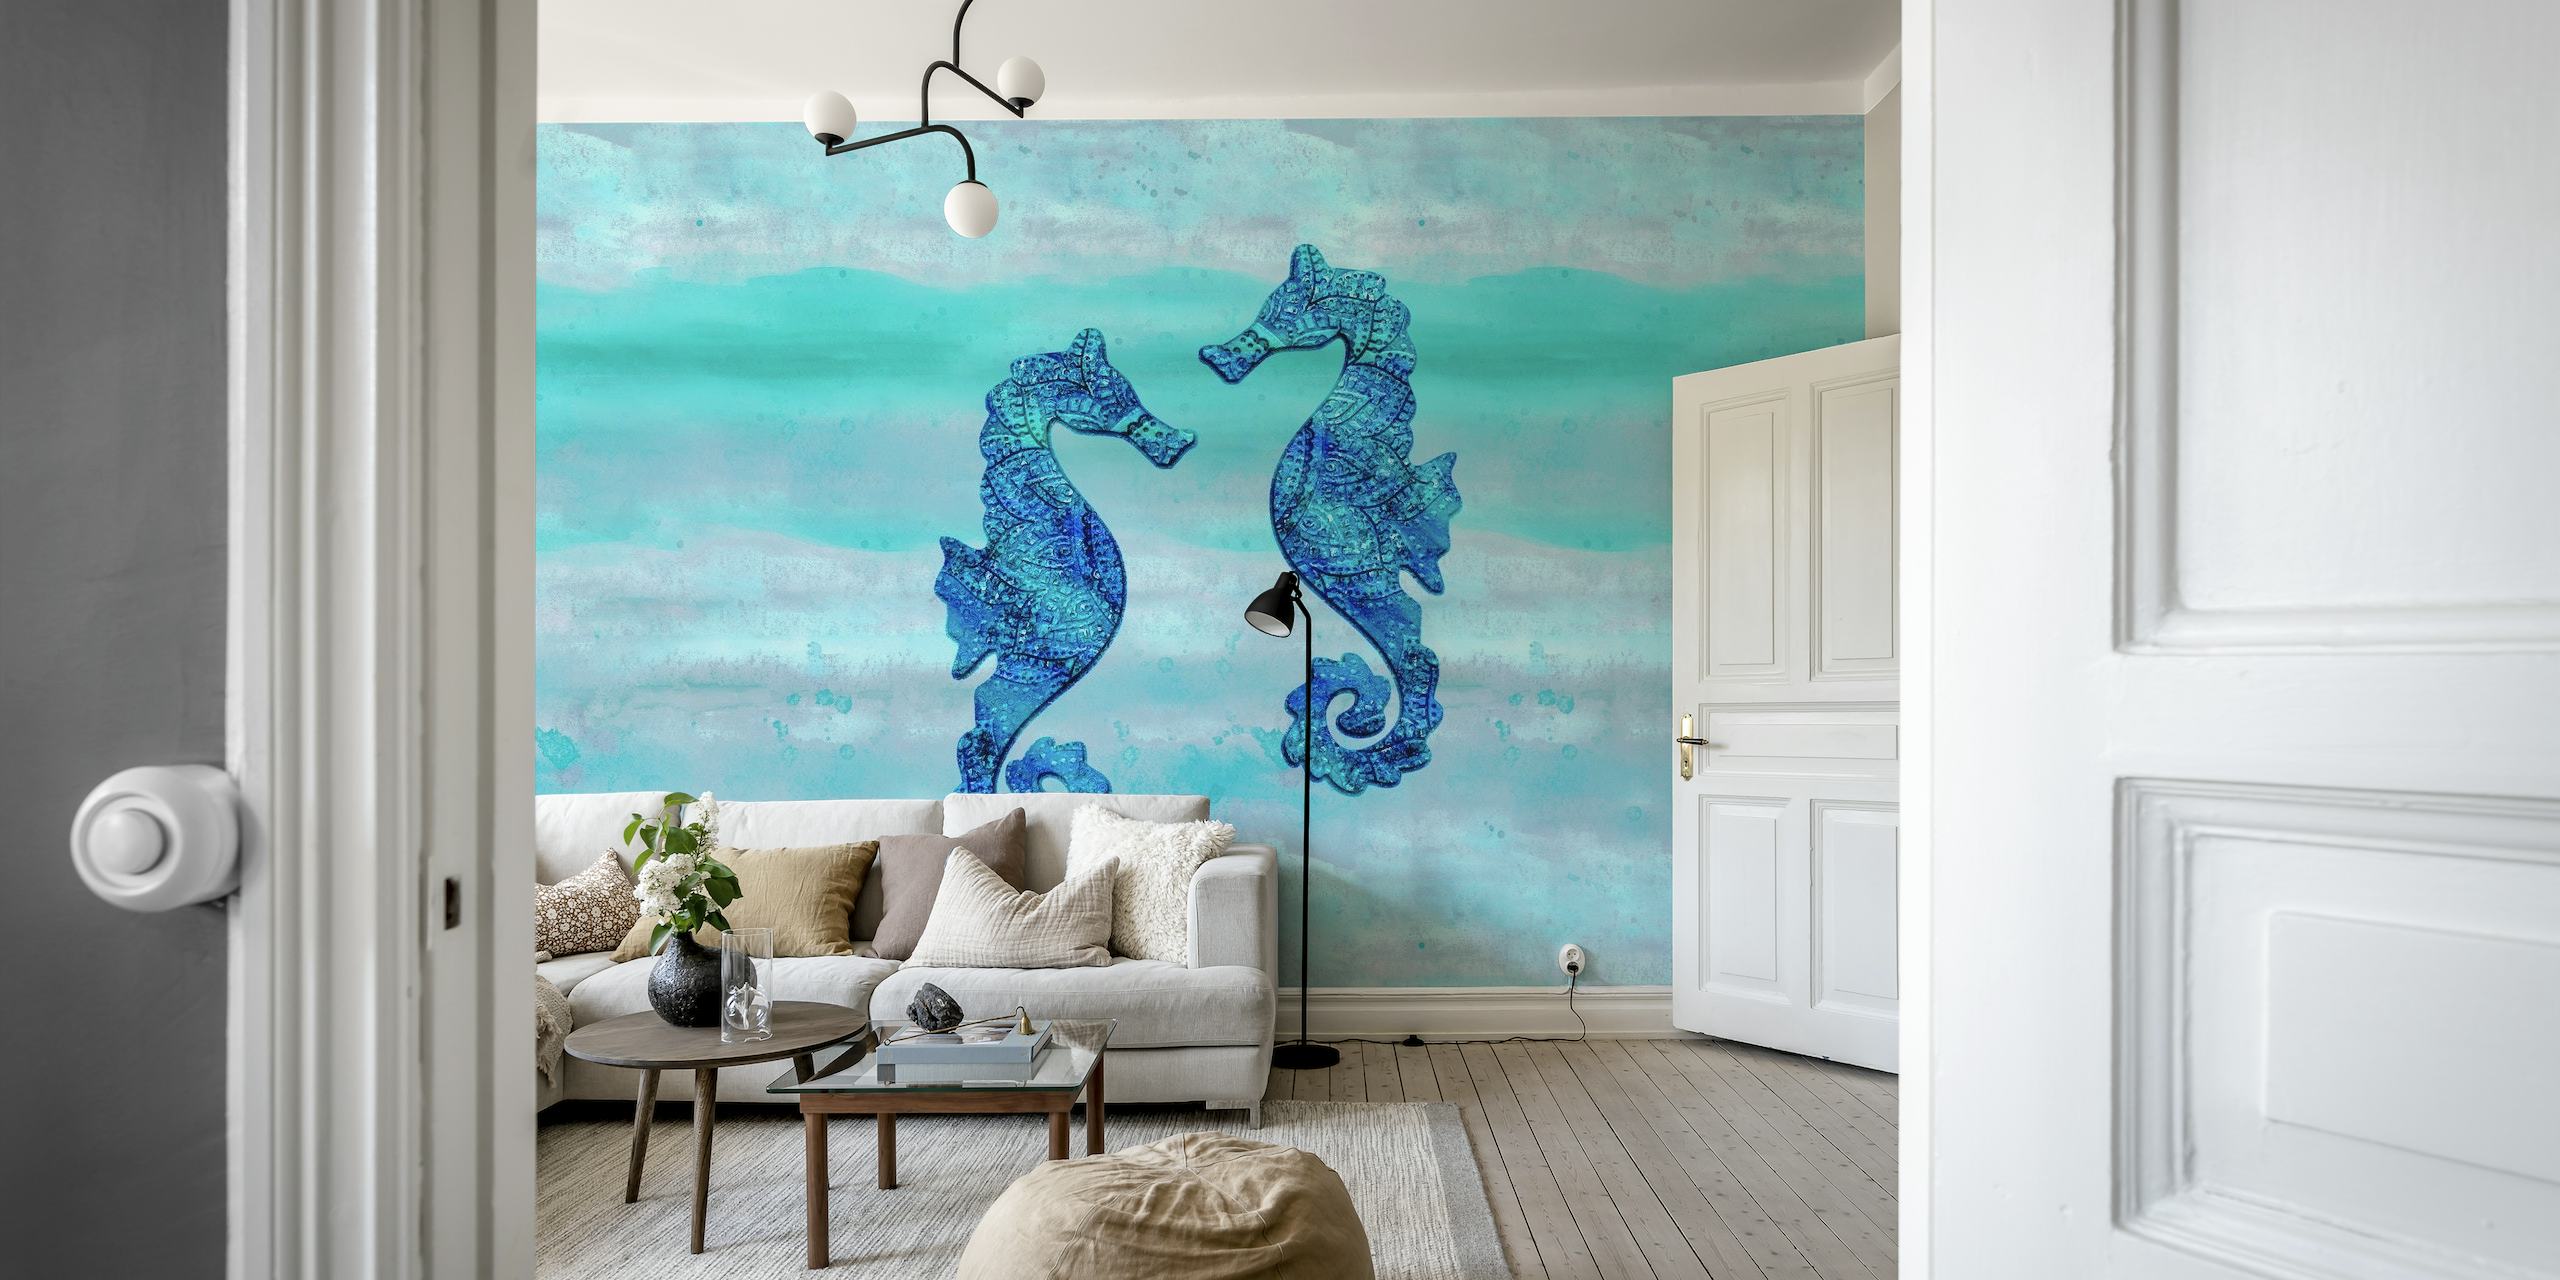 Waterverf blauwe zeepaardjes op aquamarijn achtergrondmuurschildering